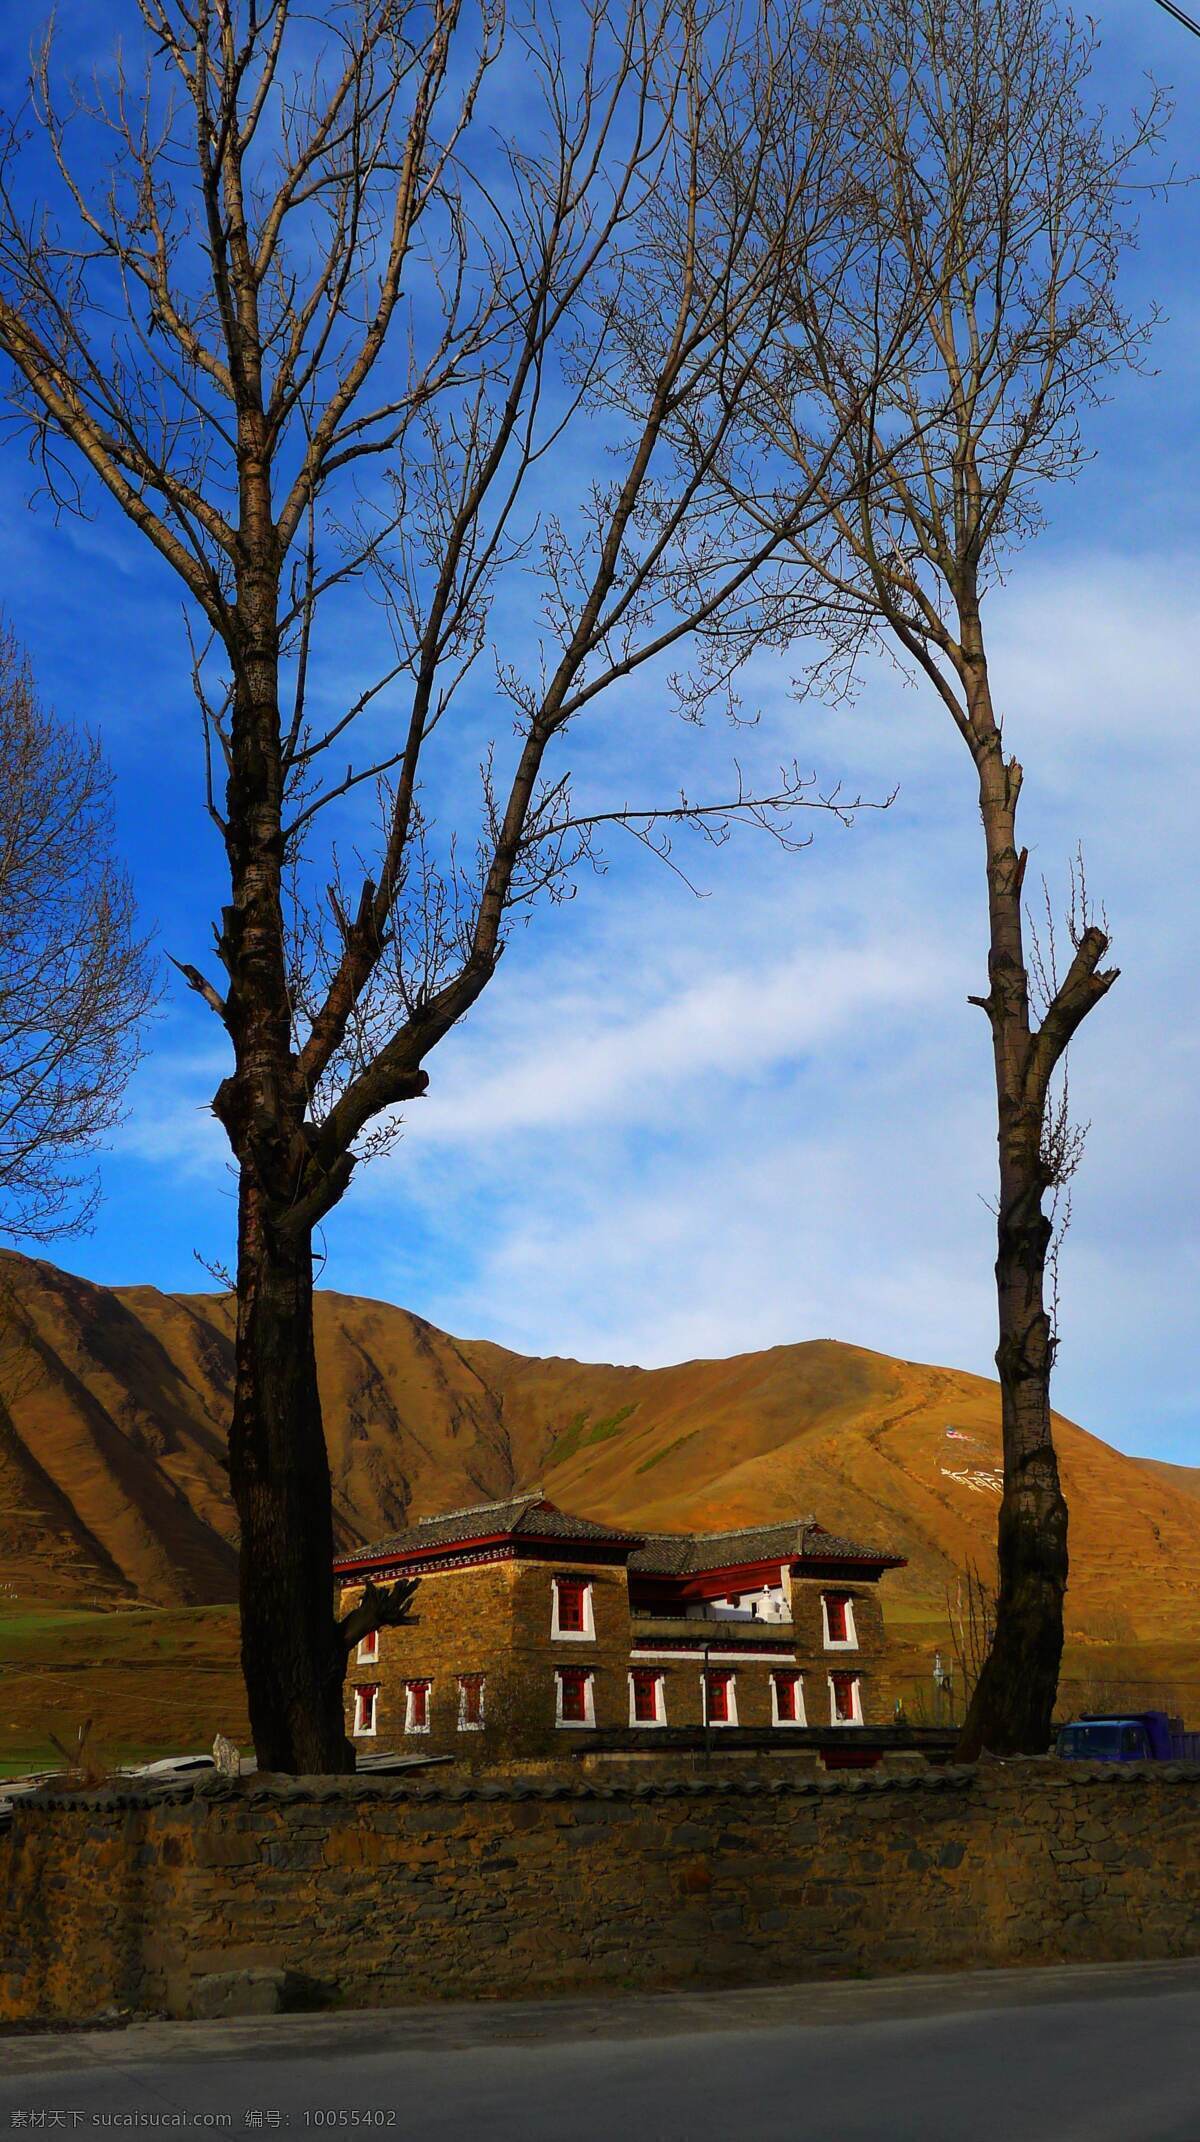 藏区小屋 西藏 风景 小屋 树 美景 旅游摄影 自然风景